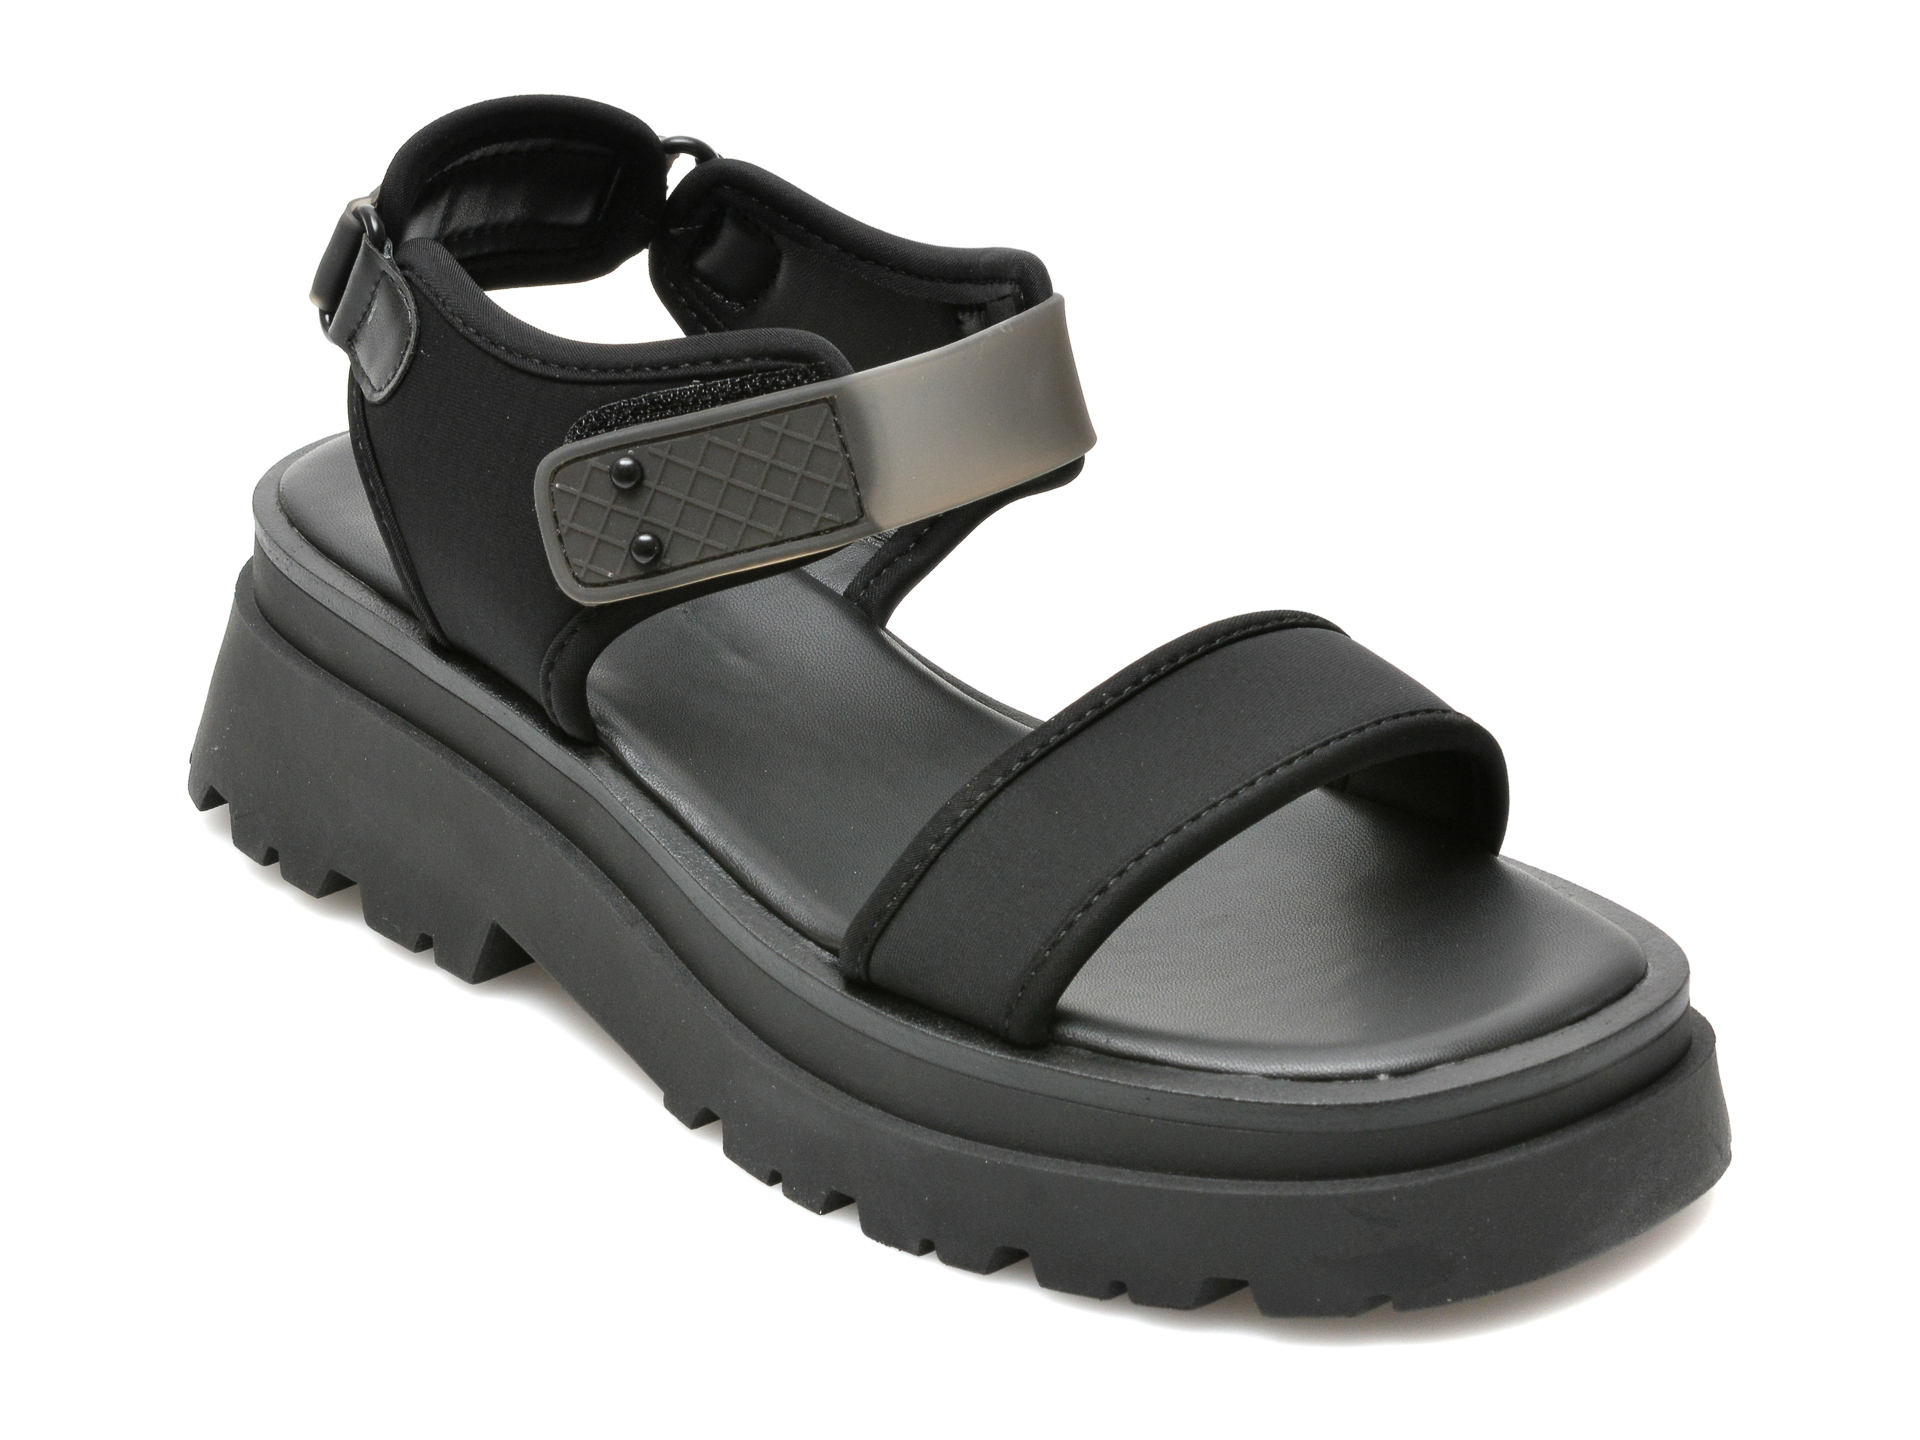 Sandale ALDO negre, CENDRIX001, din material textil Aldo